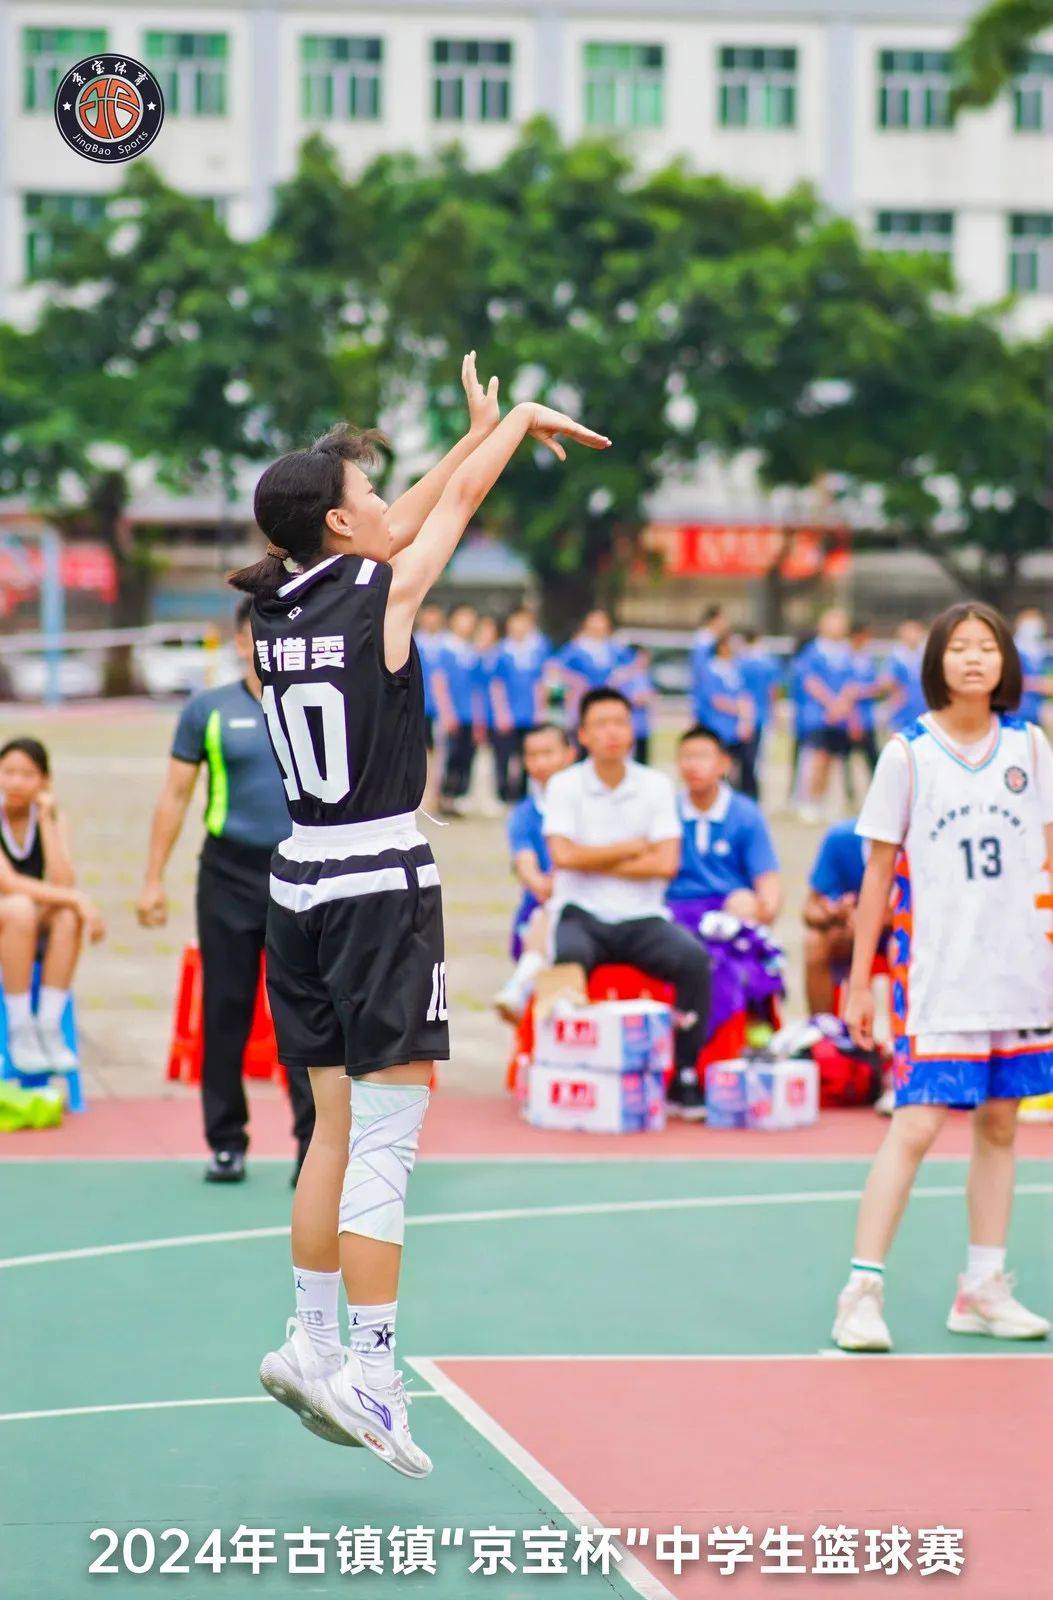 追篮扬威, 聚力逐梦——2024年古镇镇京宝杯中学生篮球赛在海洲